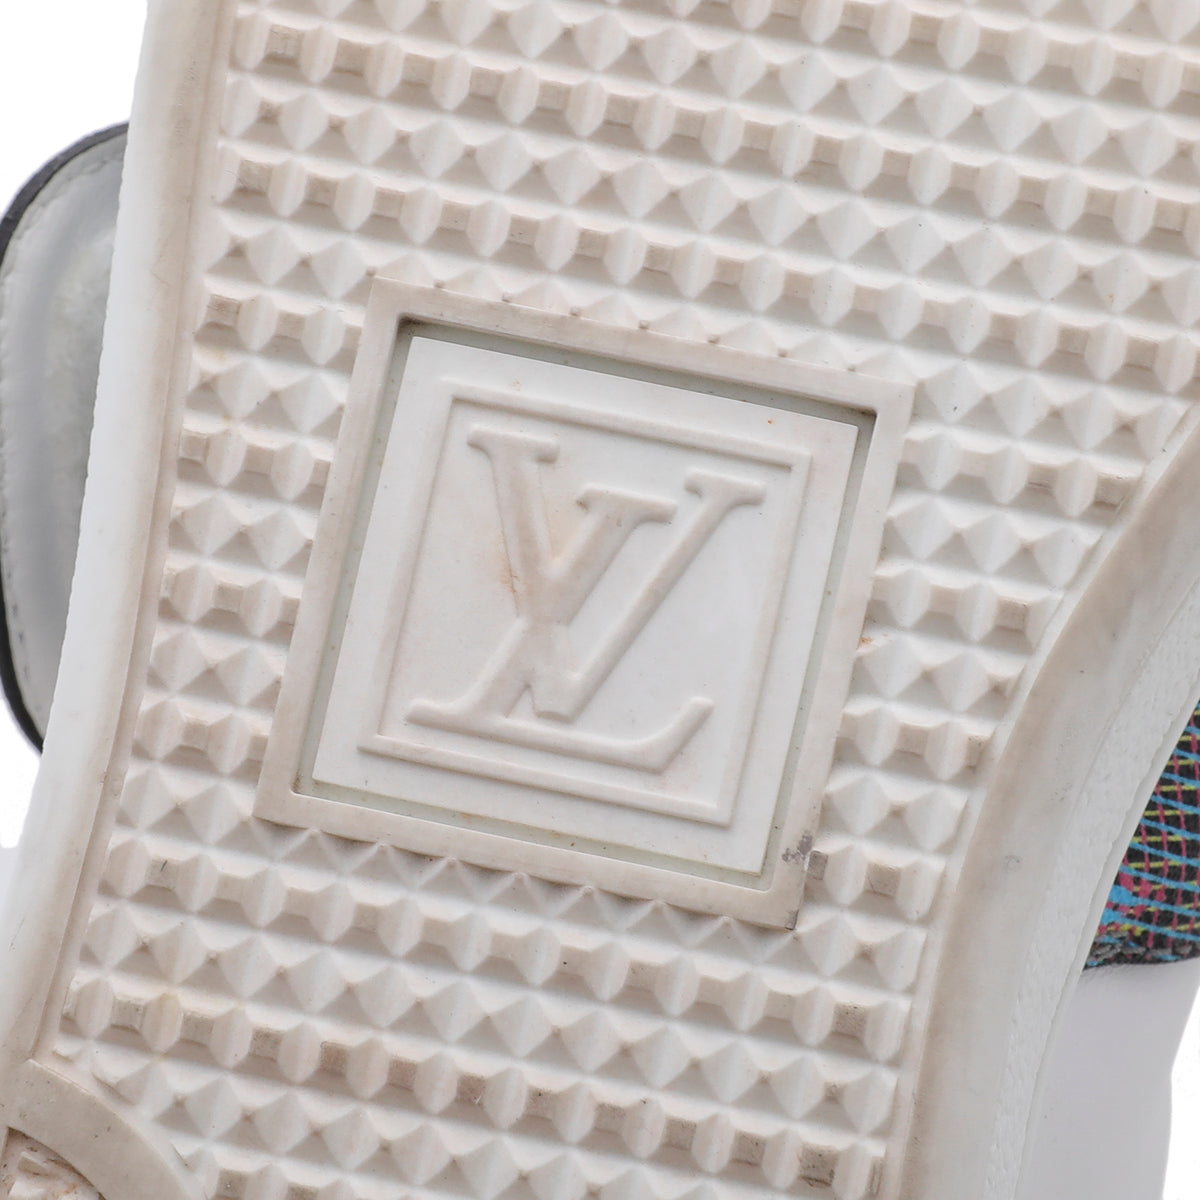 Louis Vuitton White Frontrow Lock Sneakers 35